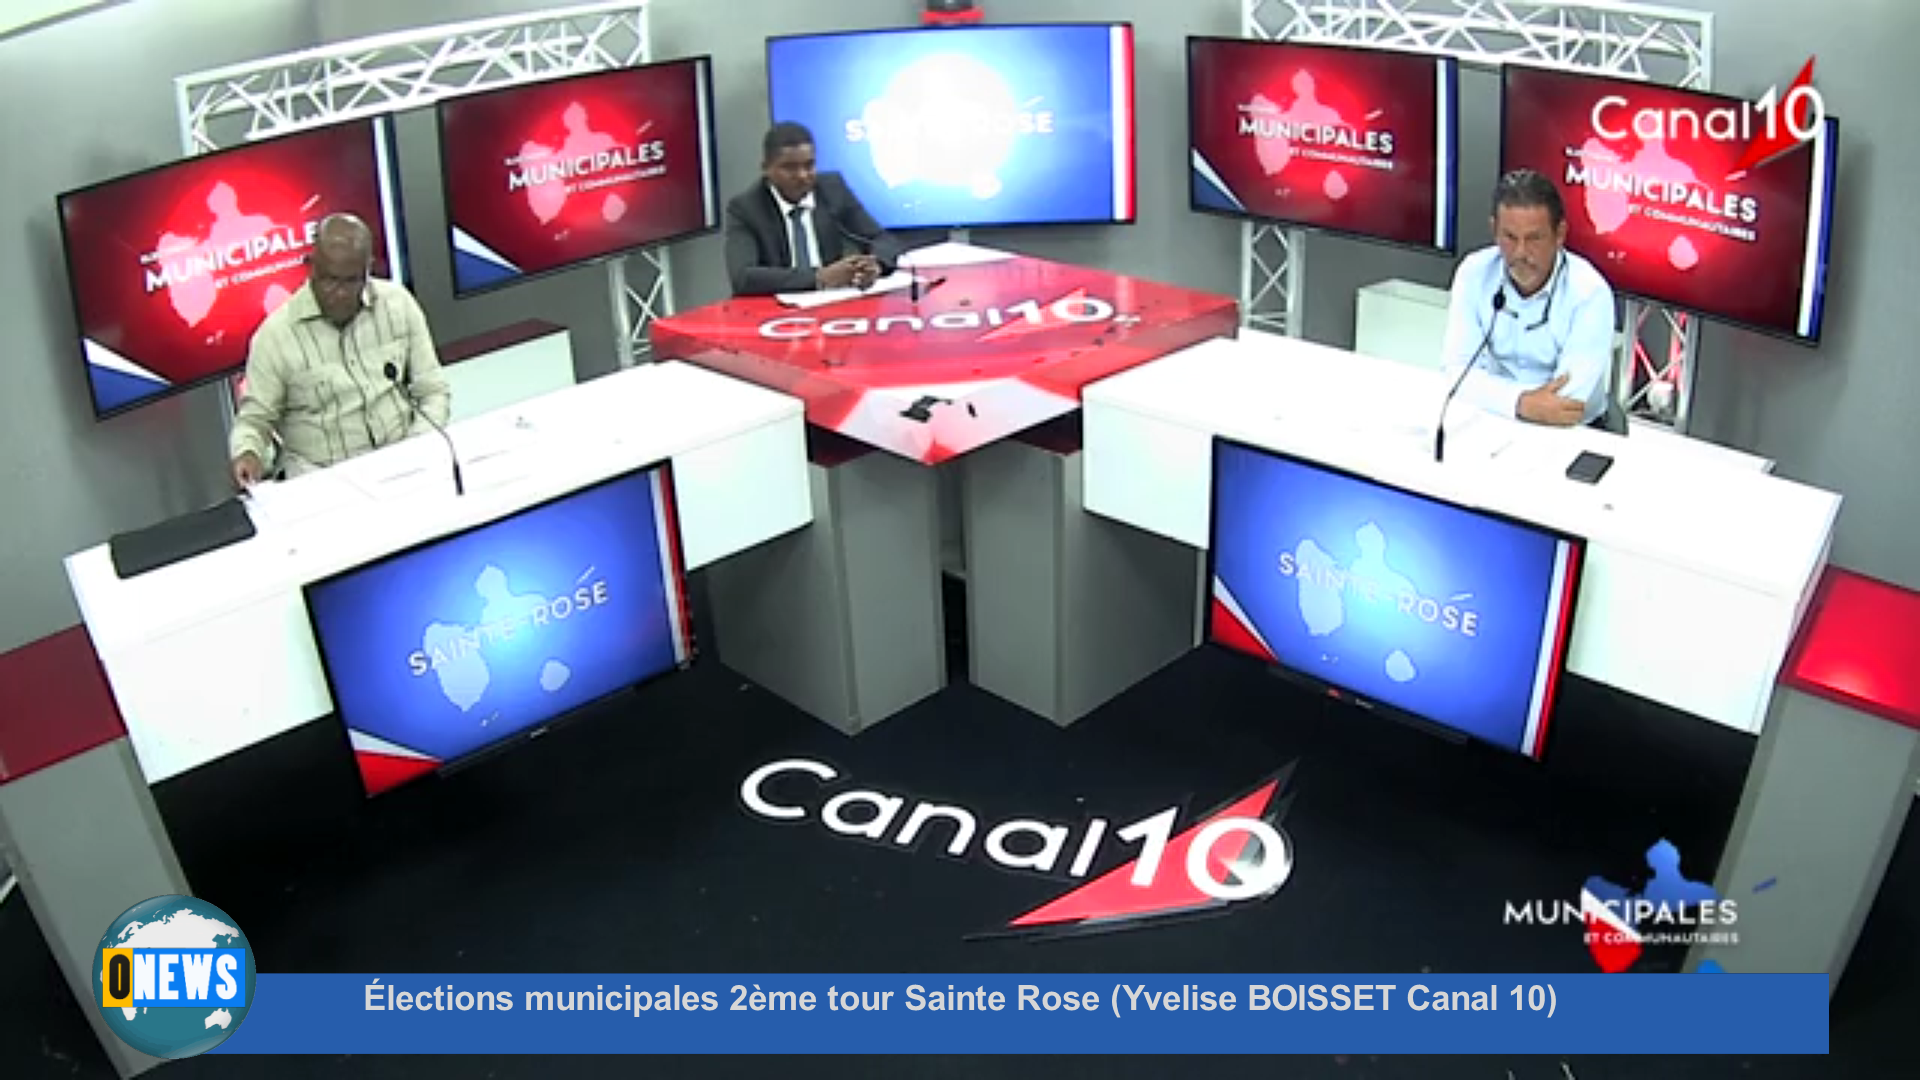 [Vidéo] Élections municipales 2ème tour Sainte Rose (Yvelise BOISSET Canal 10)